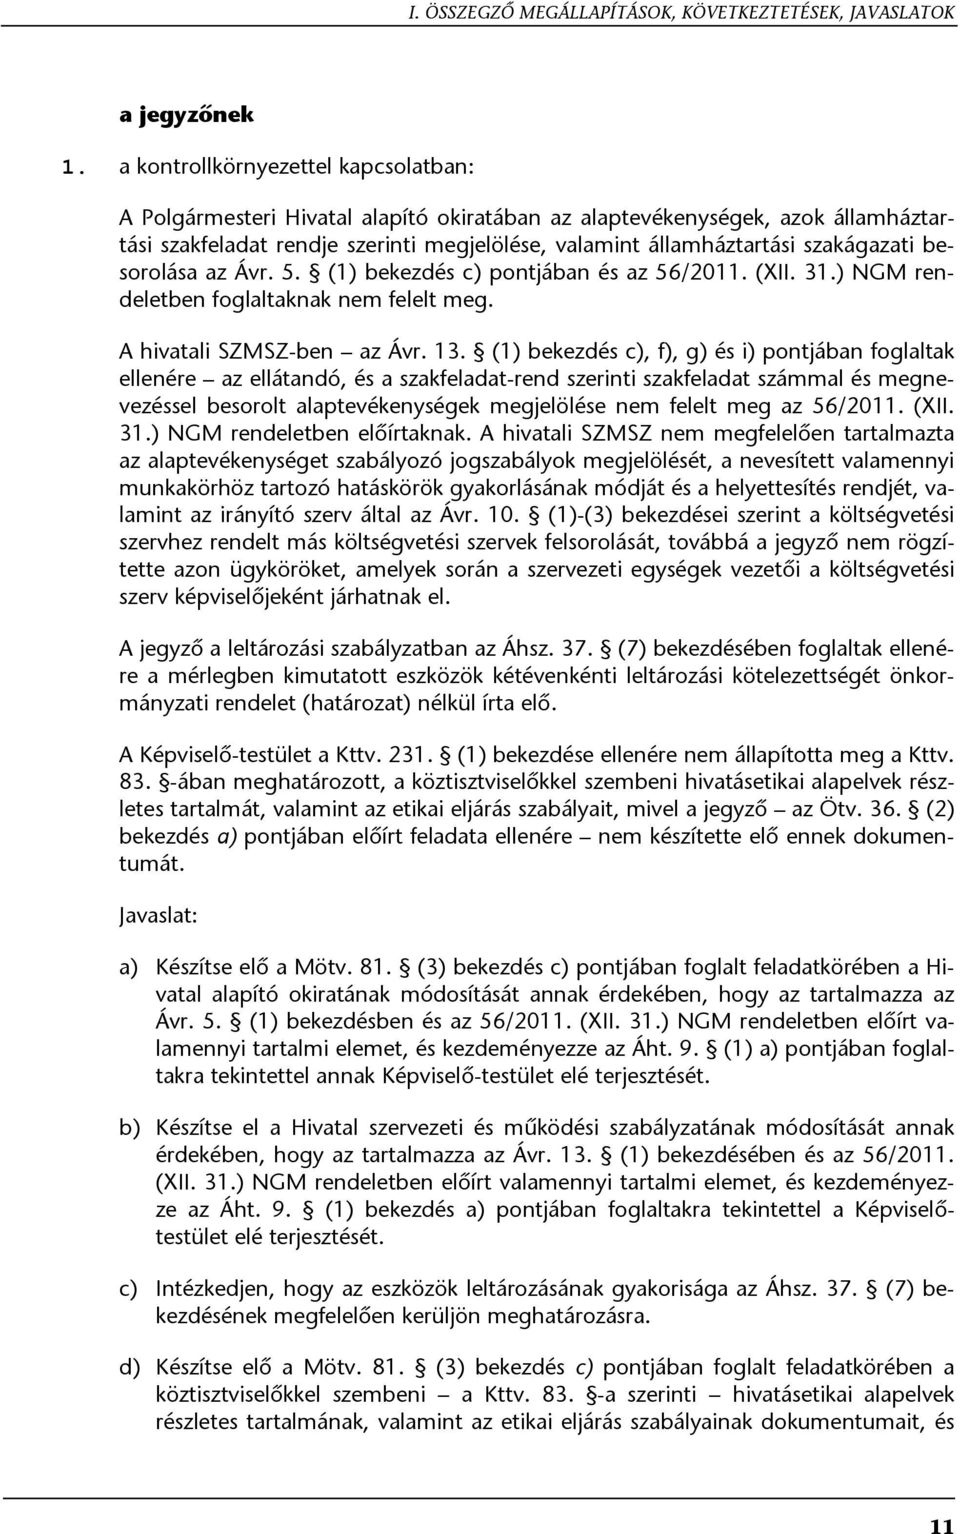 szakágazati besorolása az Ávr. 5. (1) bekezdés c) pontjában és az 56/2011. (XII. 31.) NGM rendeletben foglaltaknak nem felelt meg. A hivatali SZMSZ-ben az Ávr. 13.